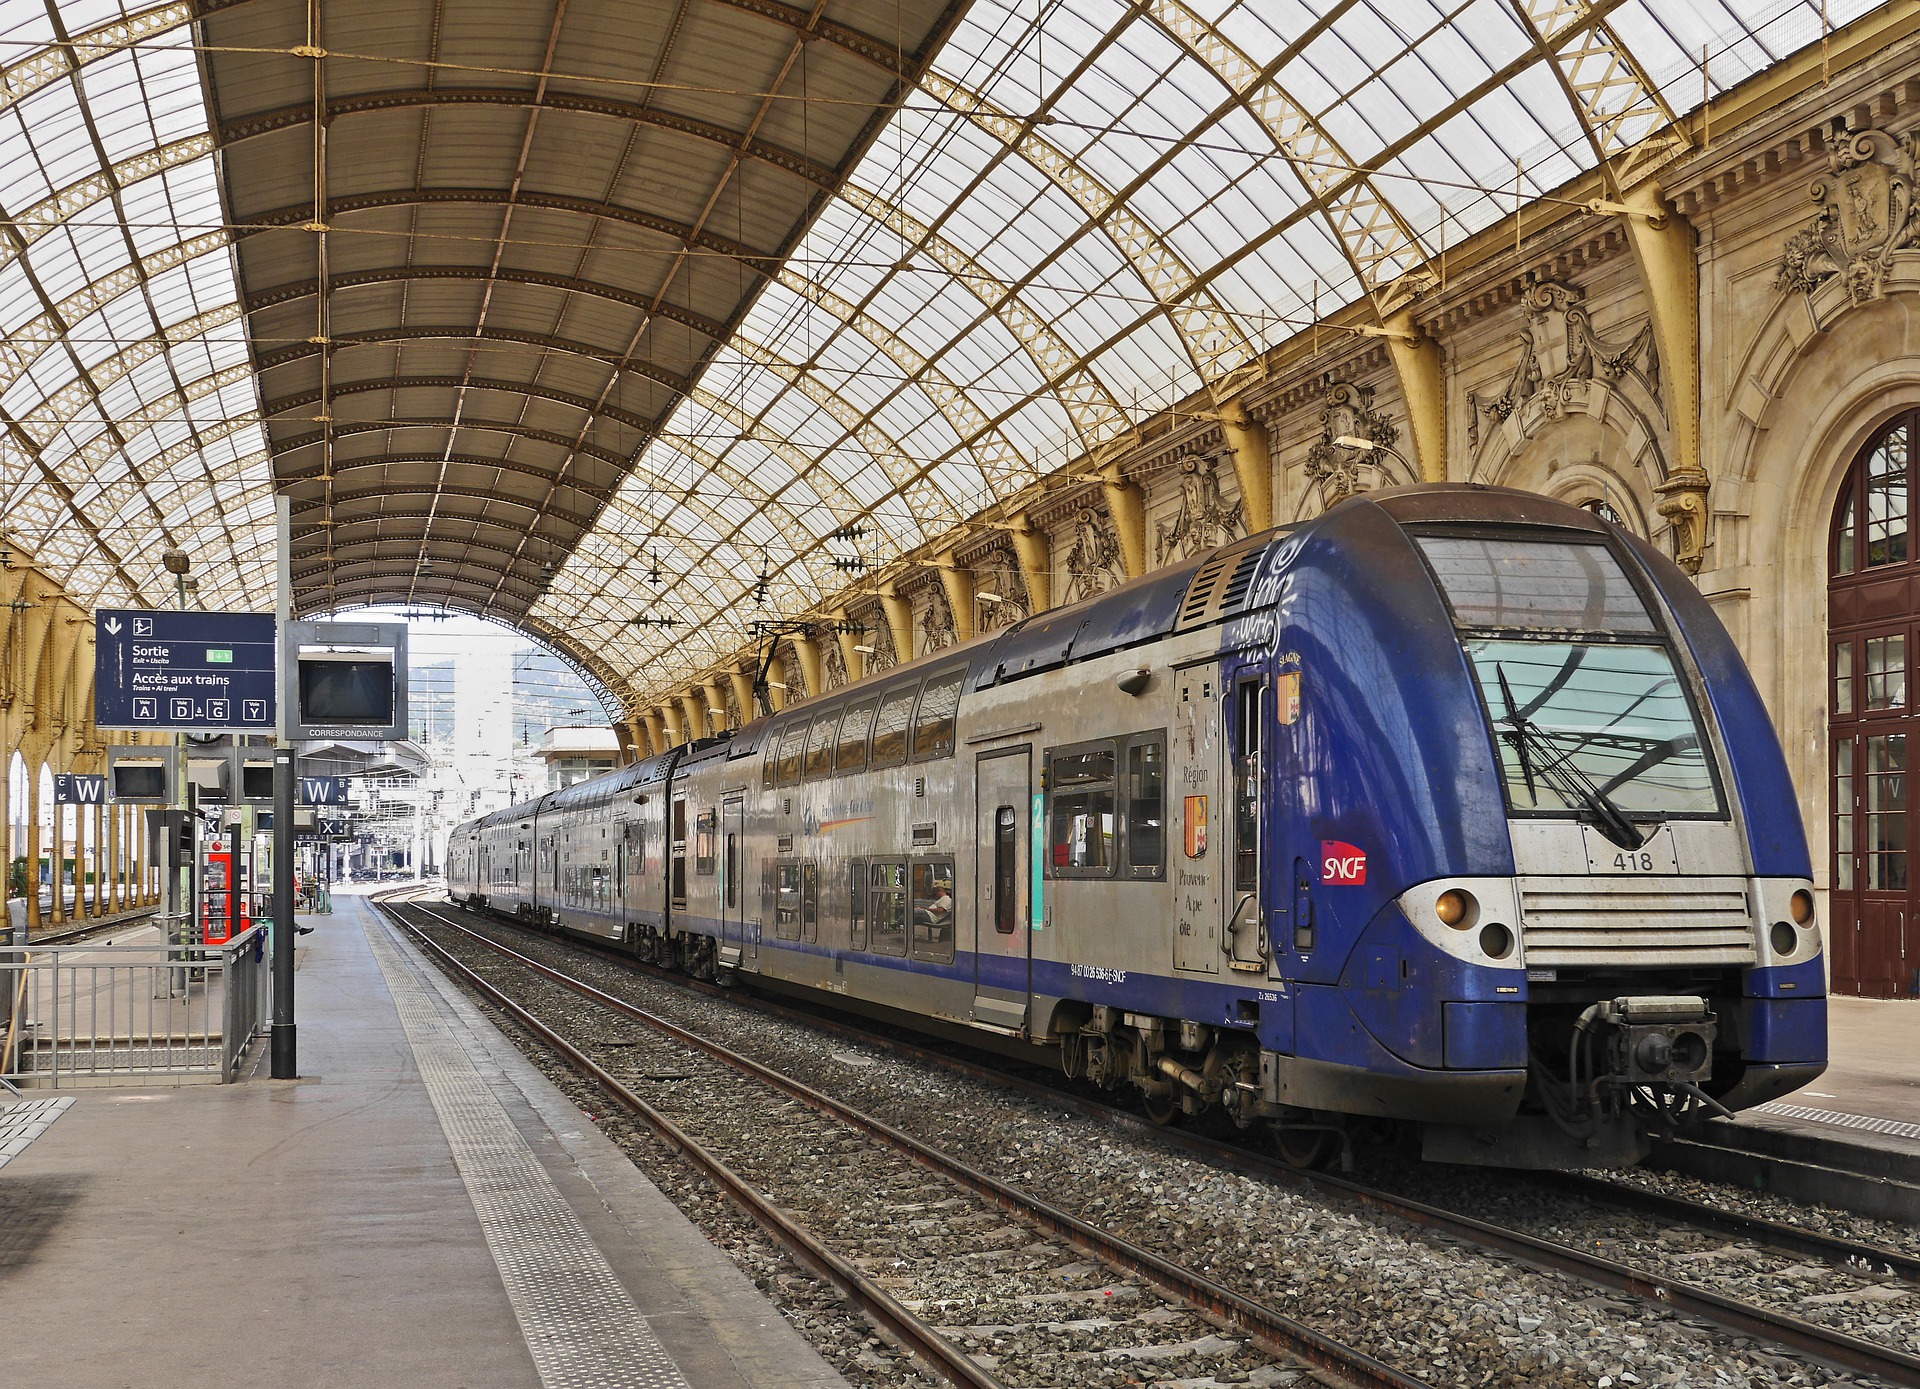 Jean-Pierre Farandou prêt à céder des actifs SNCF